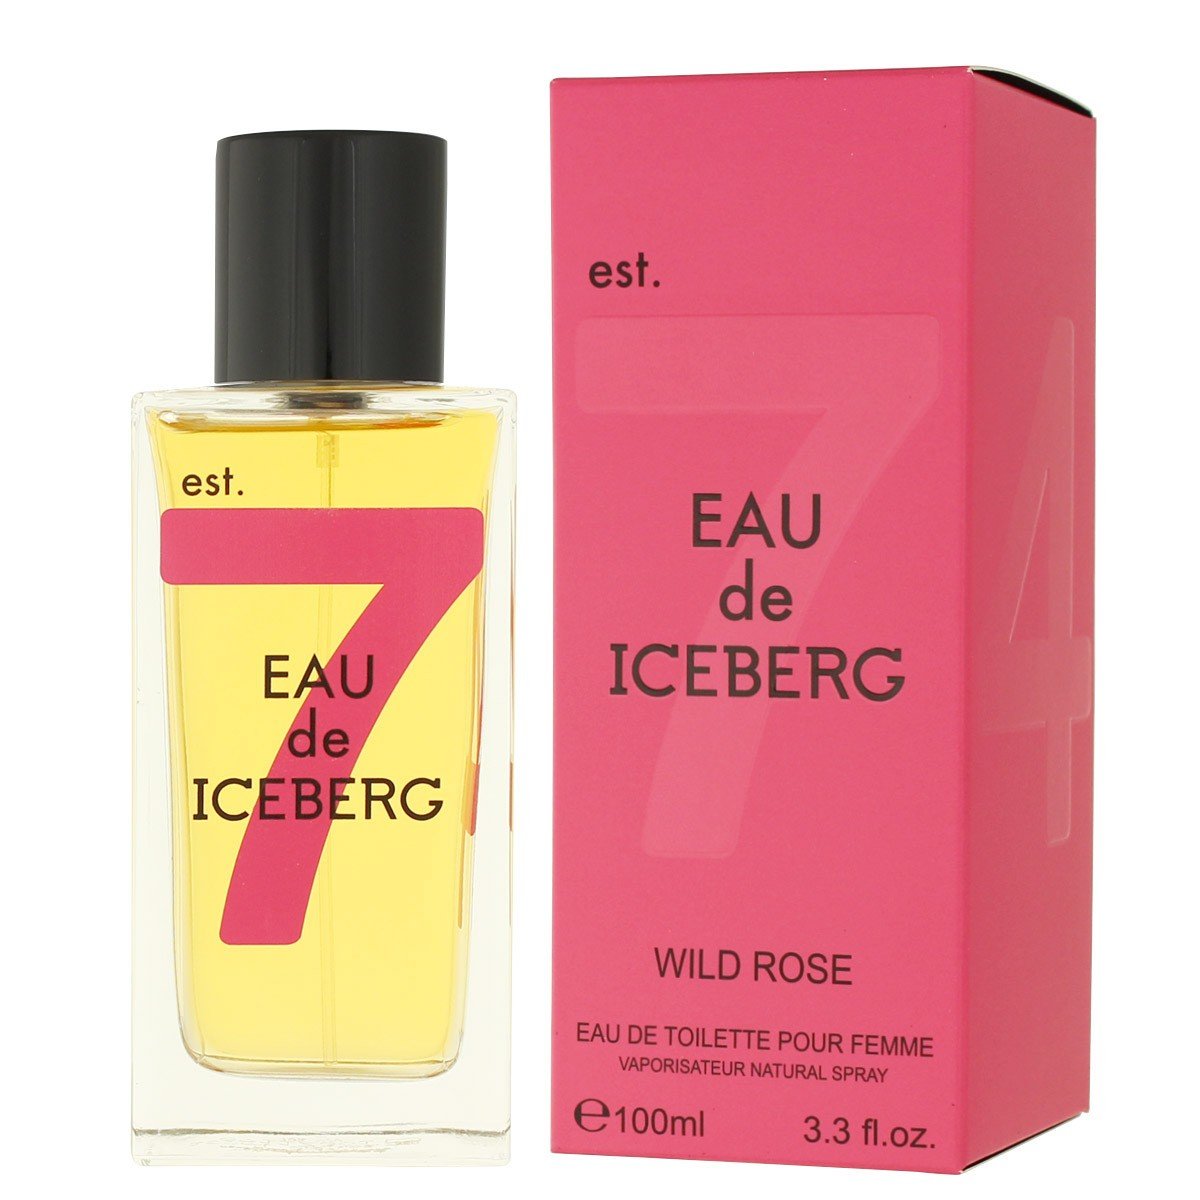 Planet Perfume - Amazing Deals On Iceberg Fragrances | Eau de Toilette